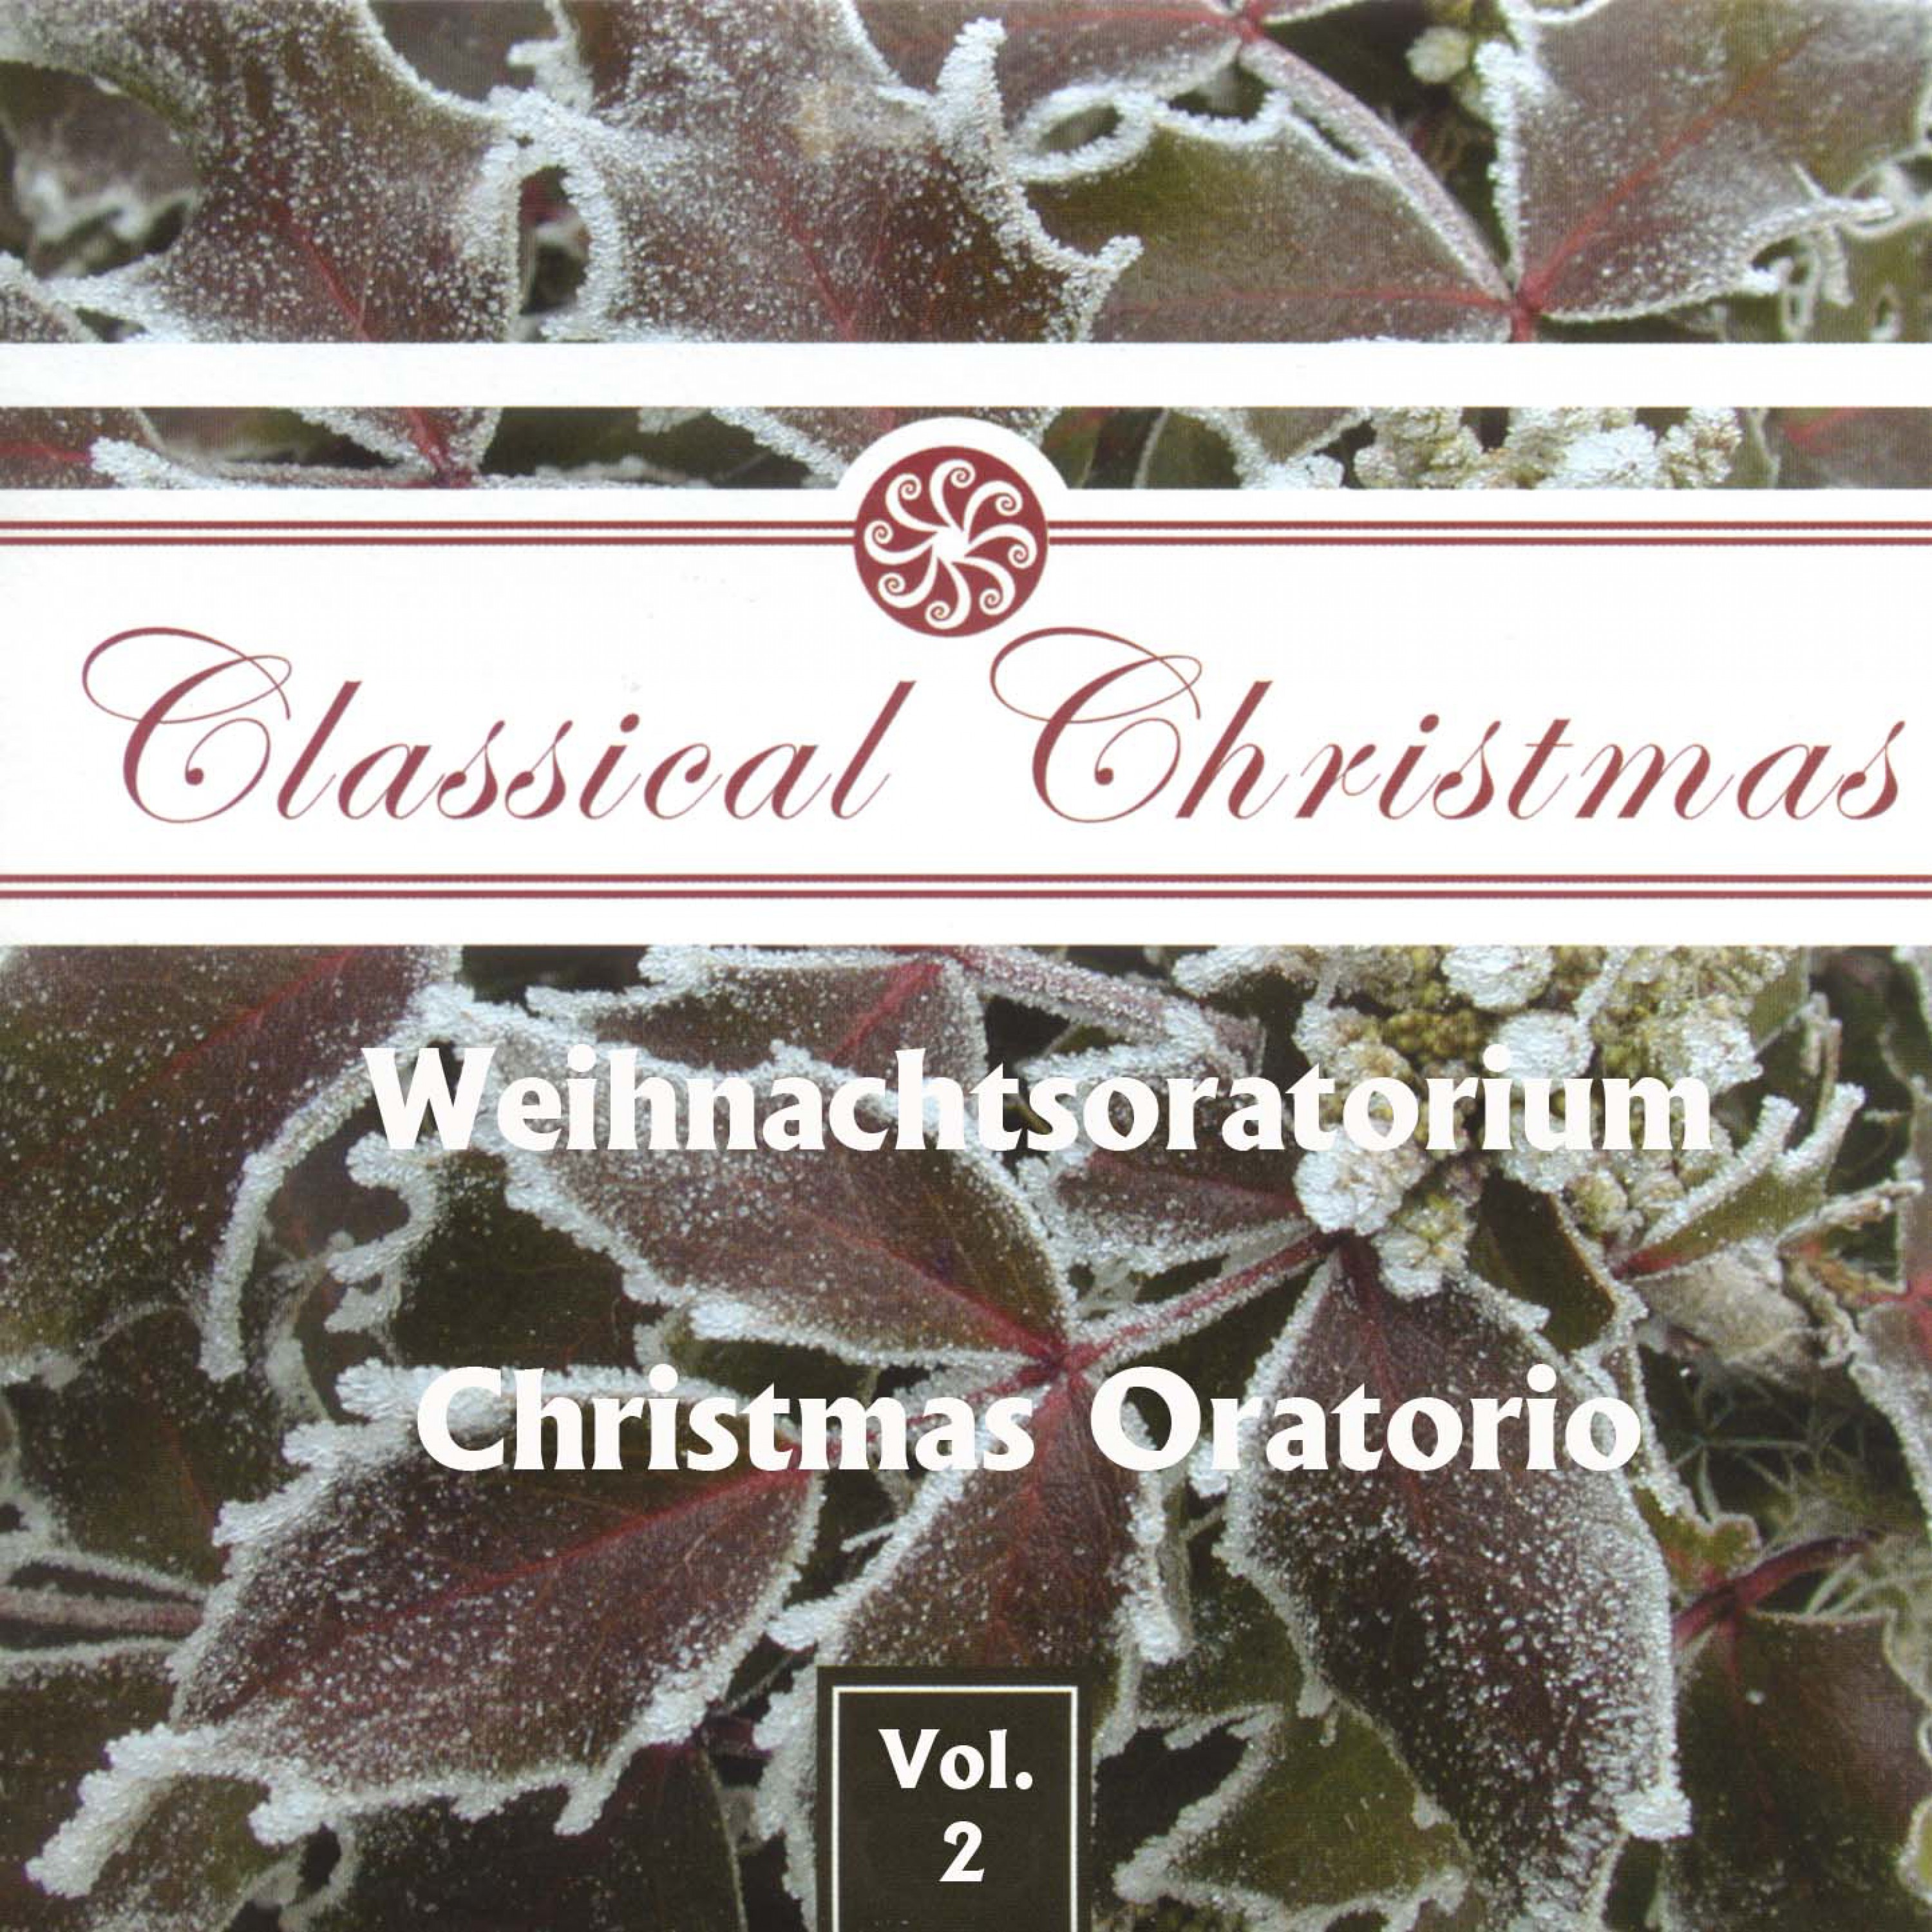 Weihnachtsoratorium, BWV 248 / Christmas Oratorio, BWV 248, Teil IV / Part IV: Fallt mit Danken, fallt mit Loben